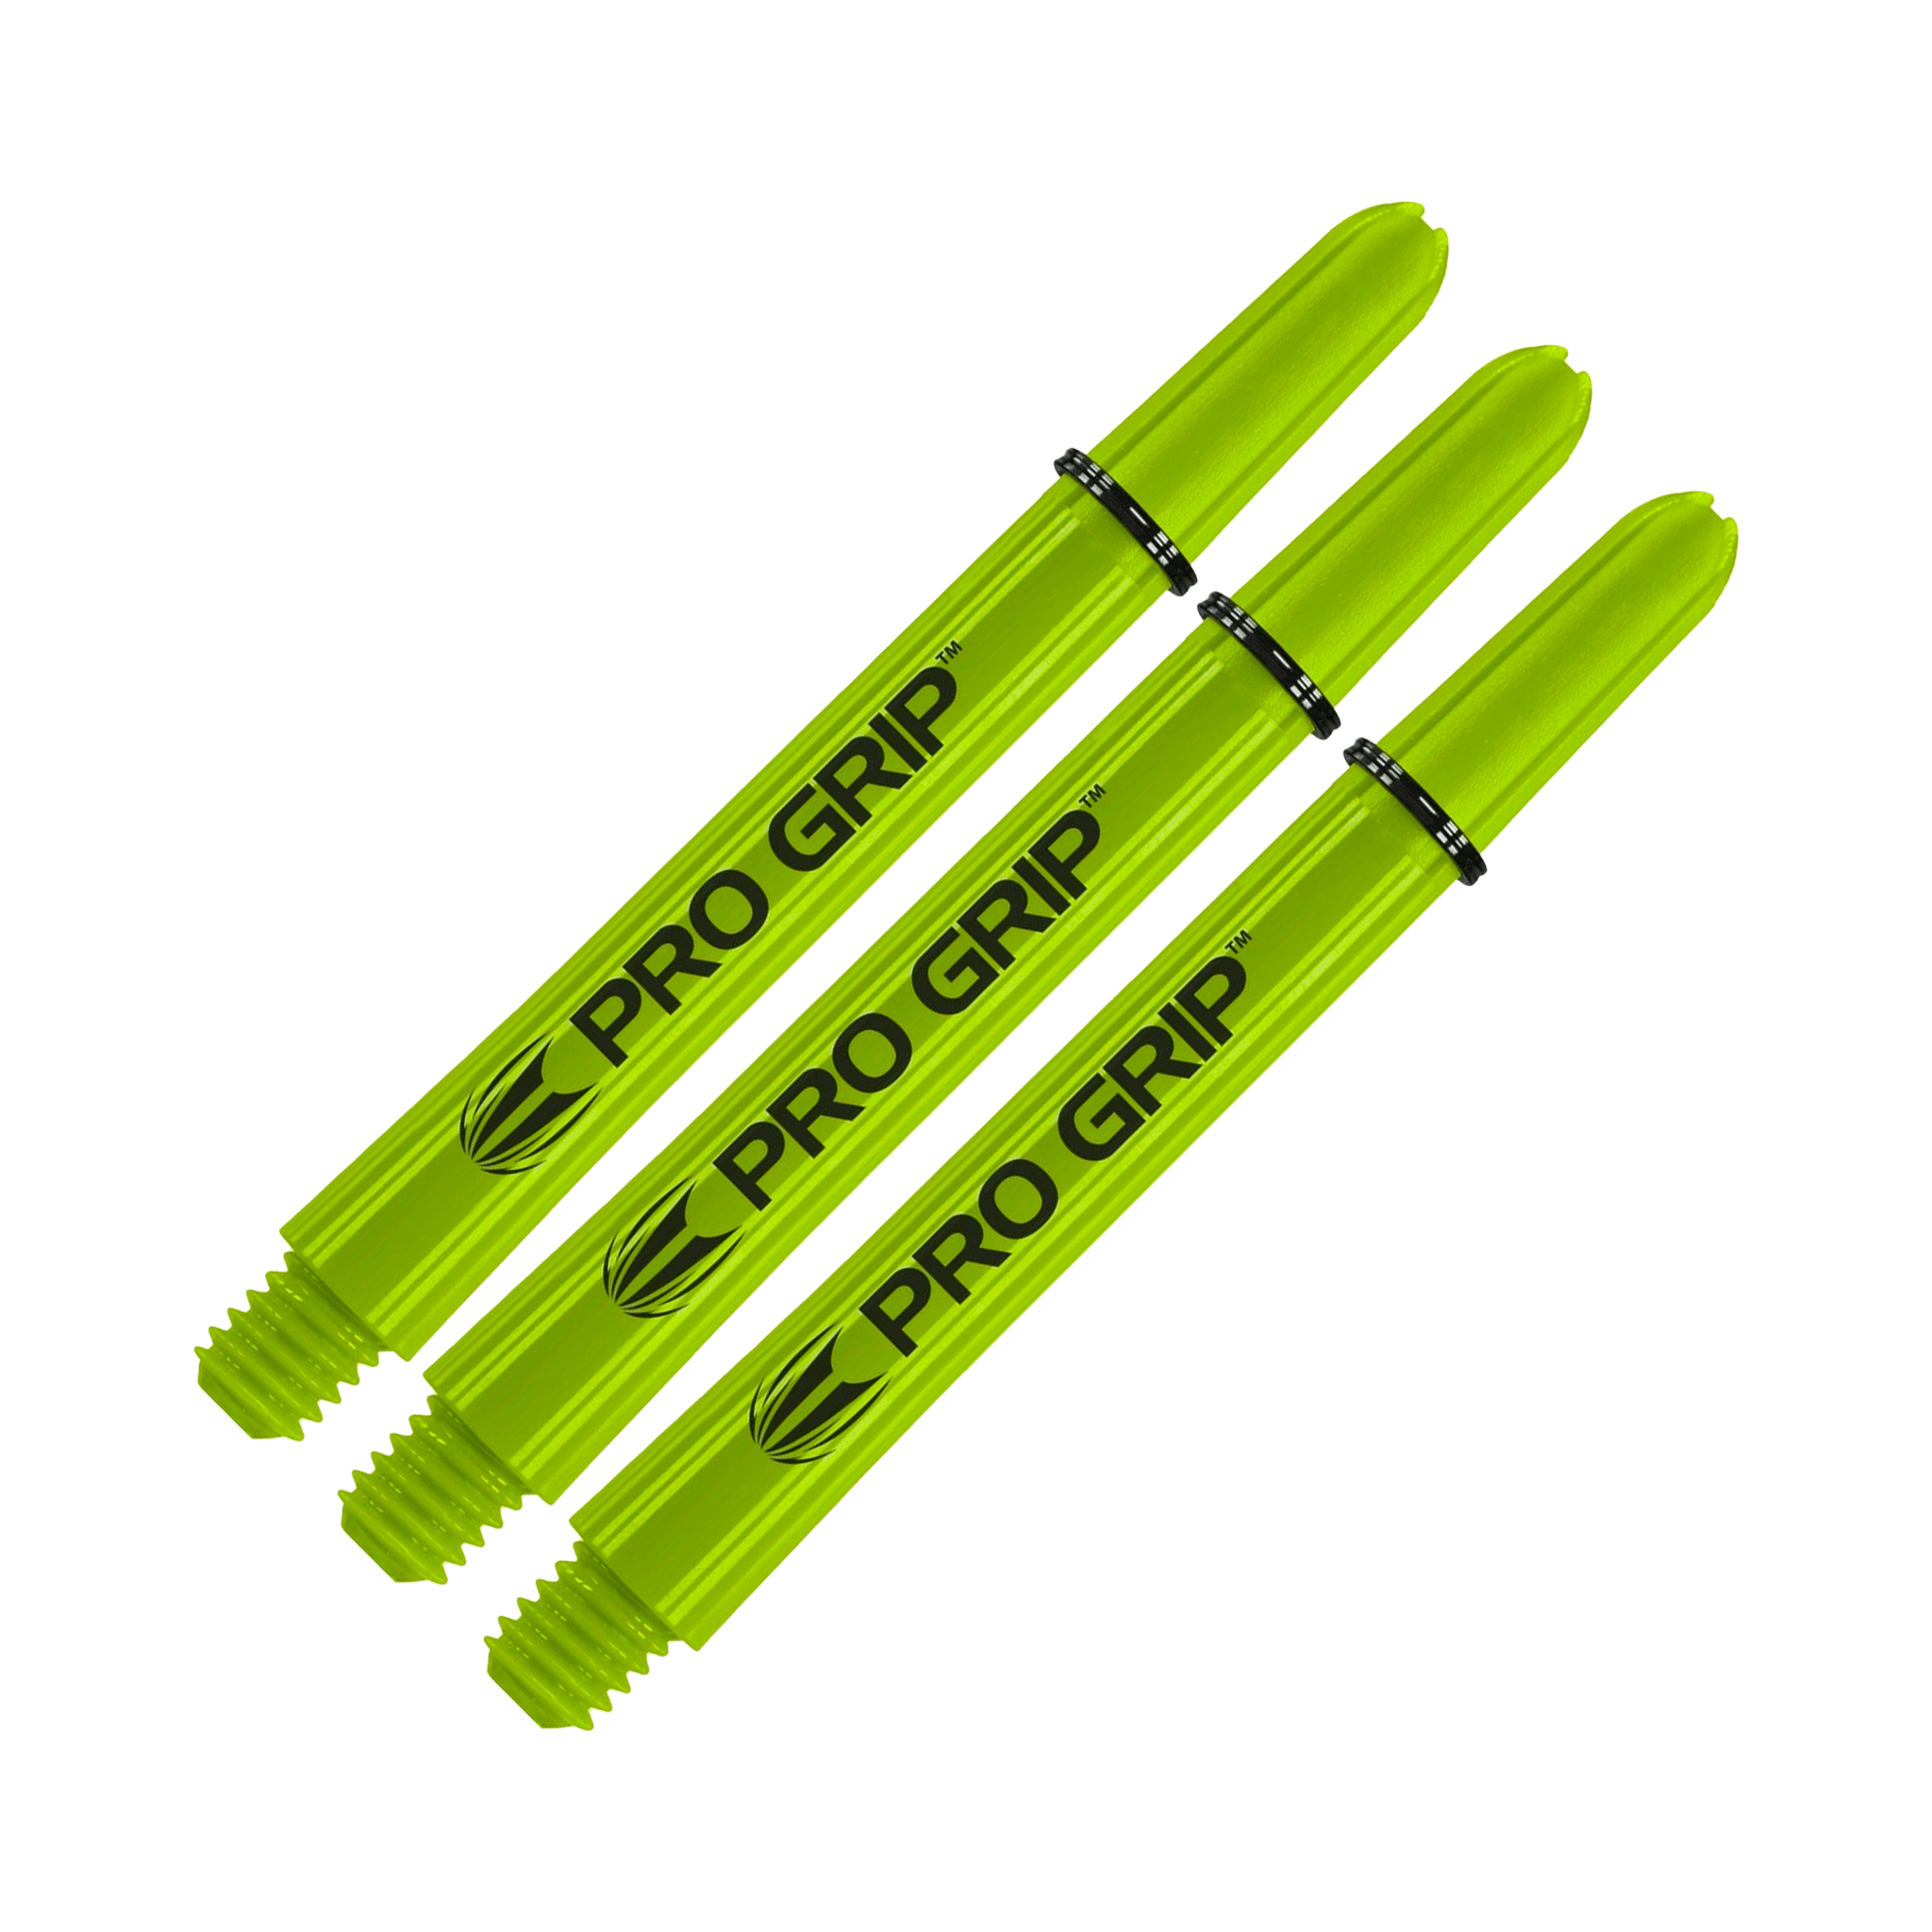 Target Pro Grip Multi Pack - Nylon Dart Shafts (3 Sets) Lime / Medium (48mm) Shafts